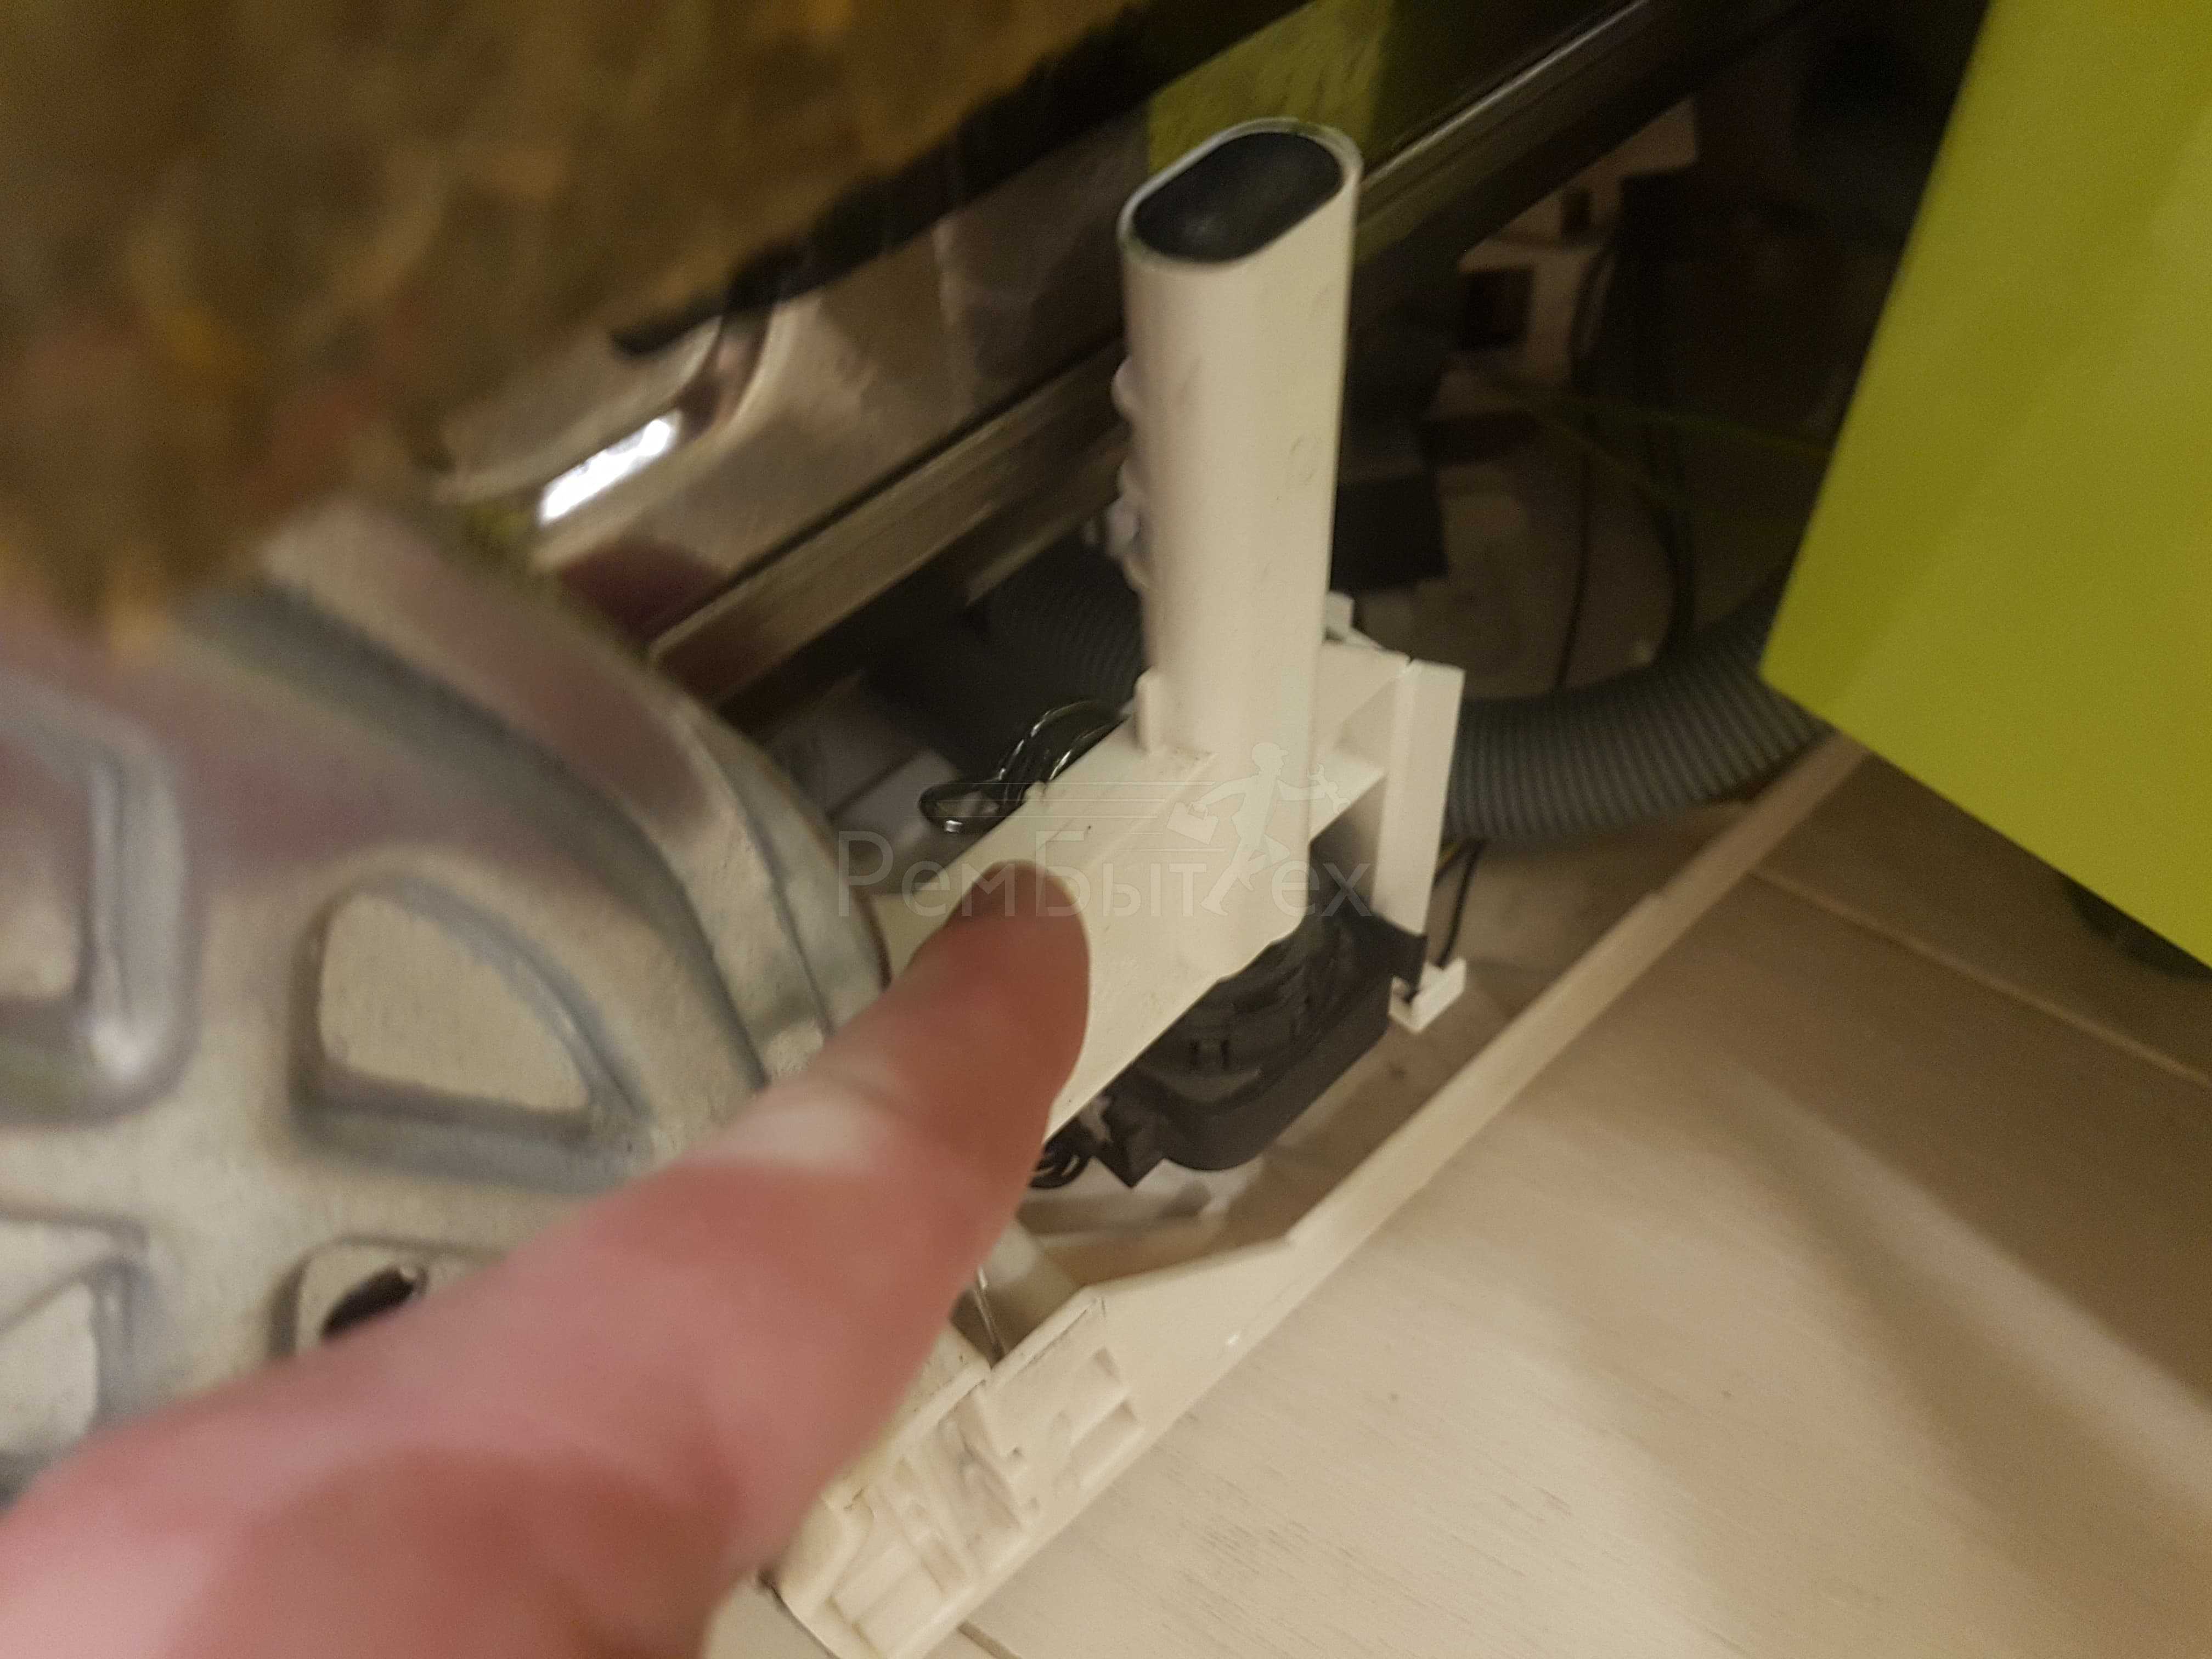 Посудомоечная машина набирает воду и сразу сливает: причины неисправностей посудомойки и способы их устранения